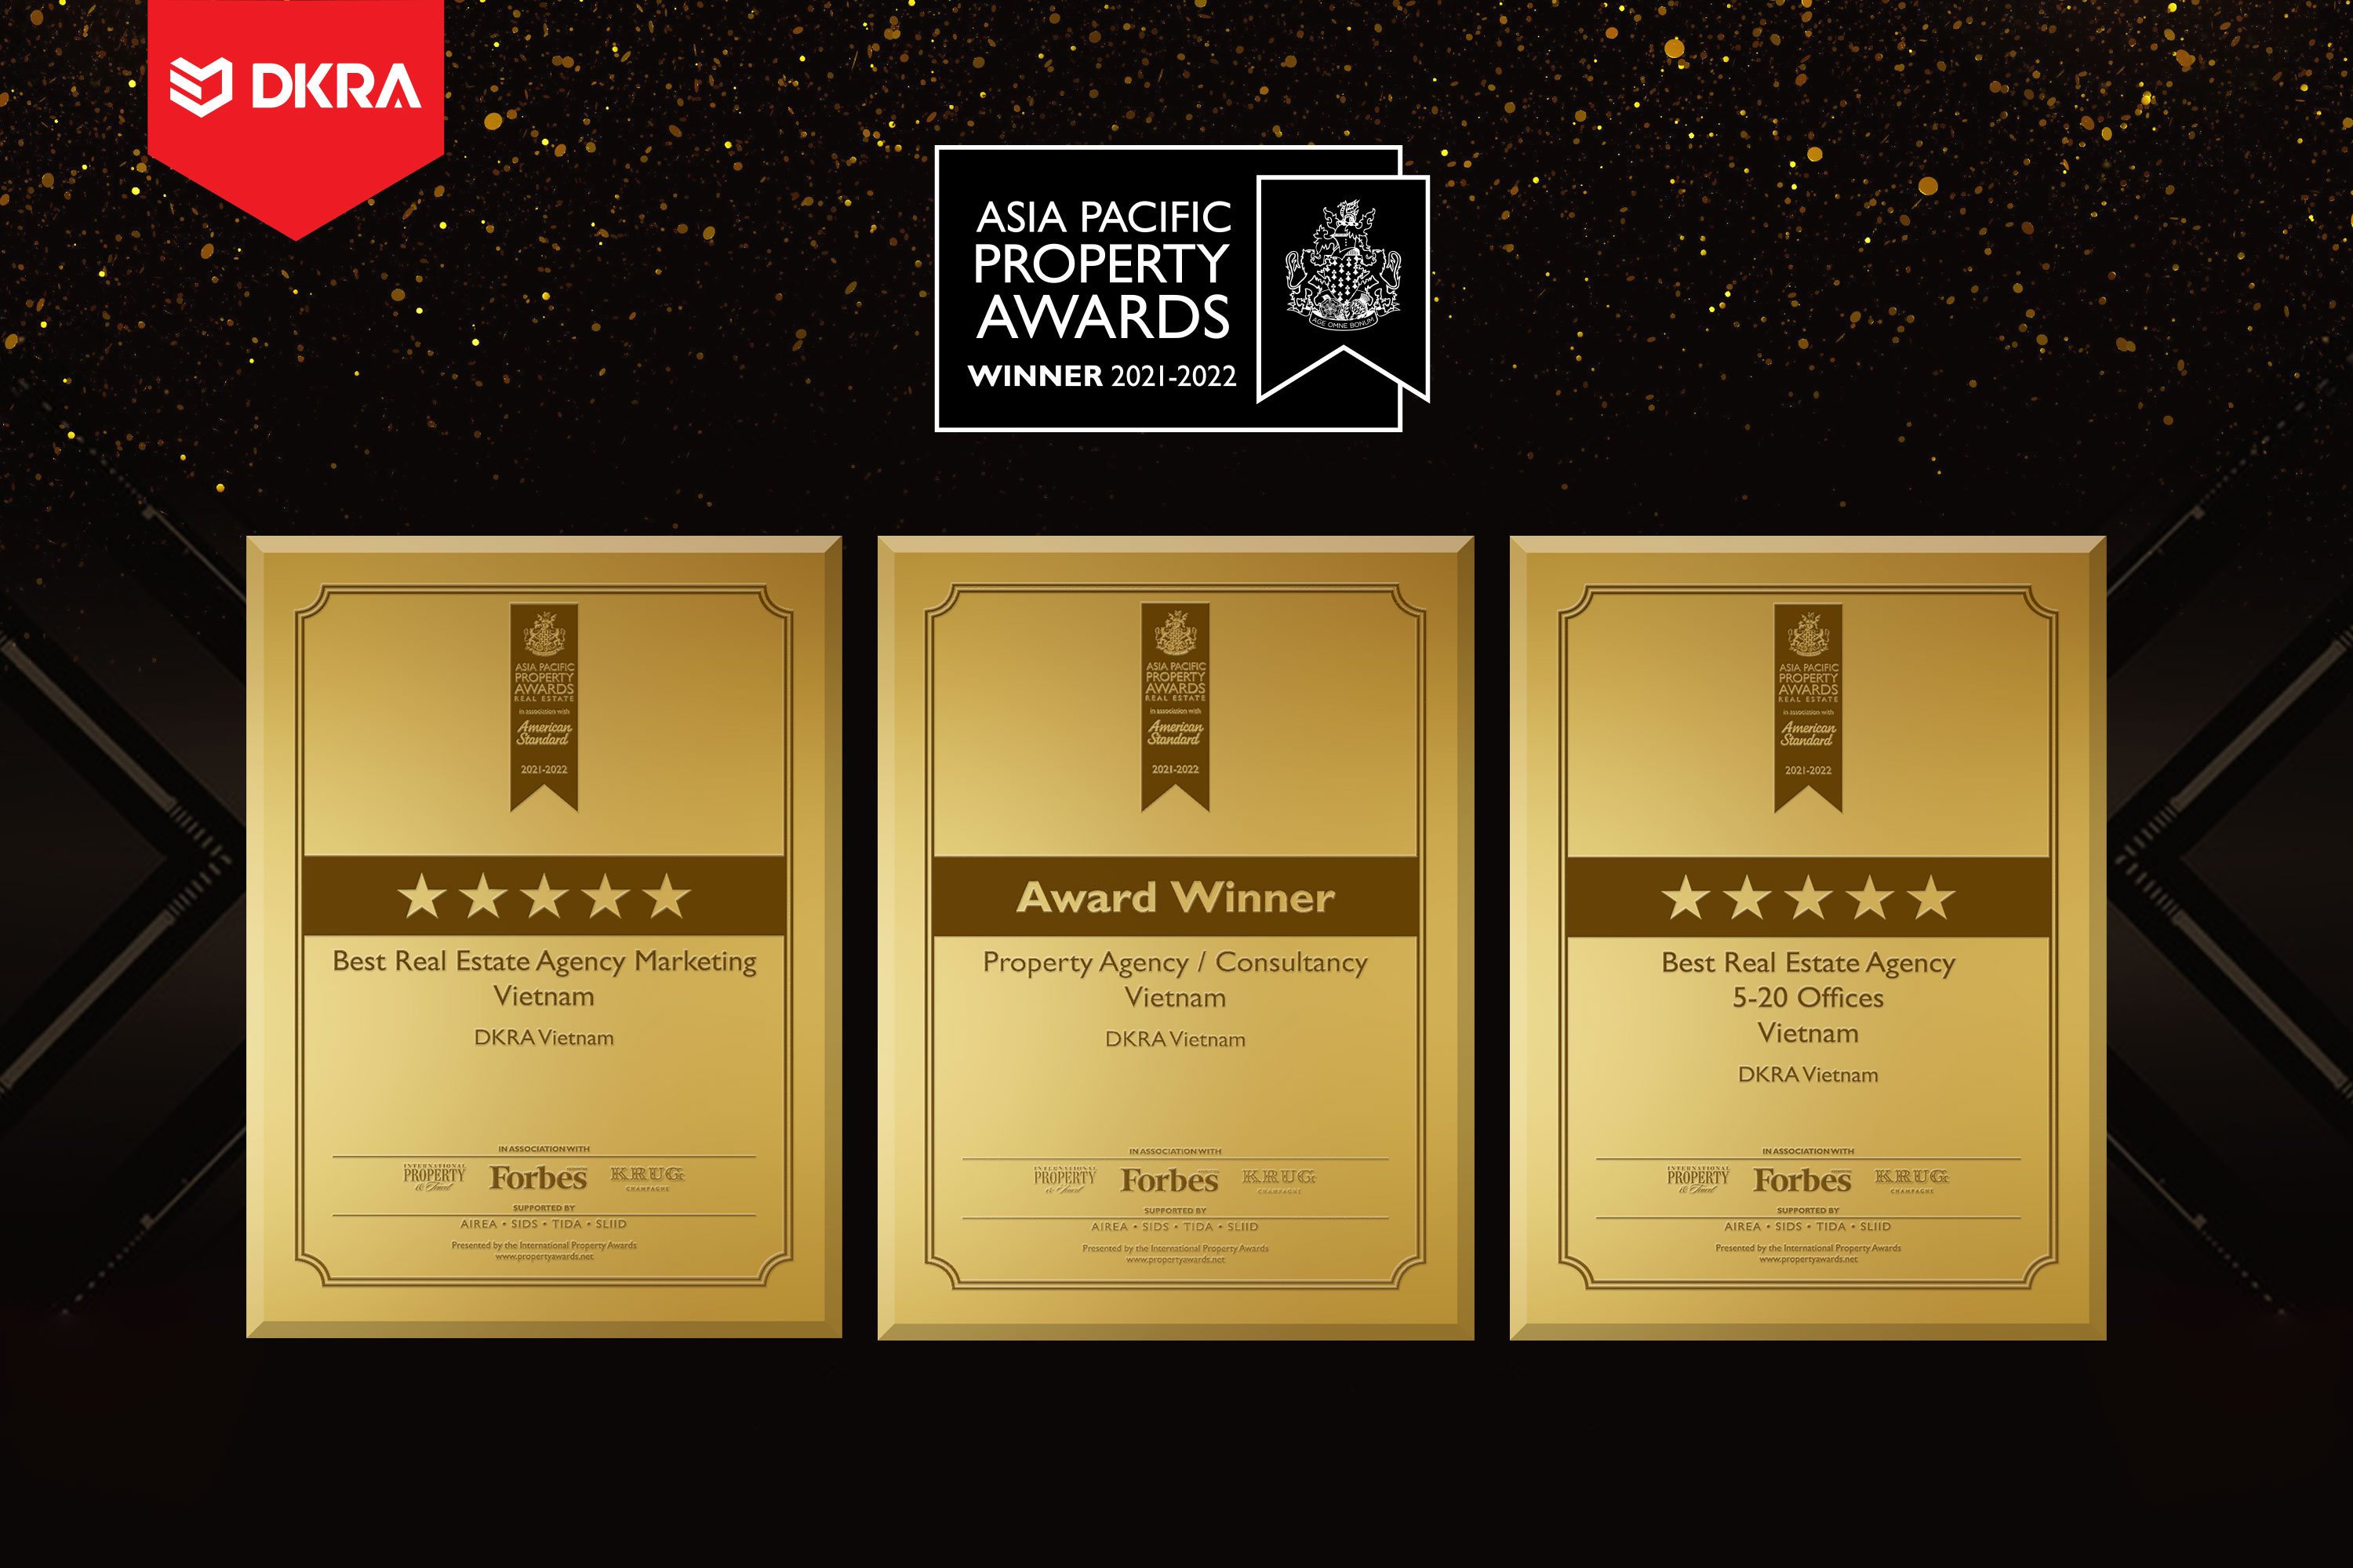 DKRA Vietnam ''Hat-trick'' giải thưởng “Đơn vị tư vấn dịch vụ BĐS thương mại tốt nhất Việt Nam”, “Hệ thống phân phối BĐS xuất sắc nhất Việt Nam, “Đơn vị tư vấn tiếp thị BĐS tốt nhất Việt Nam” tại Asia Pacific Property Awards năm 2021